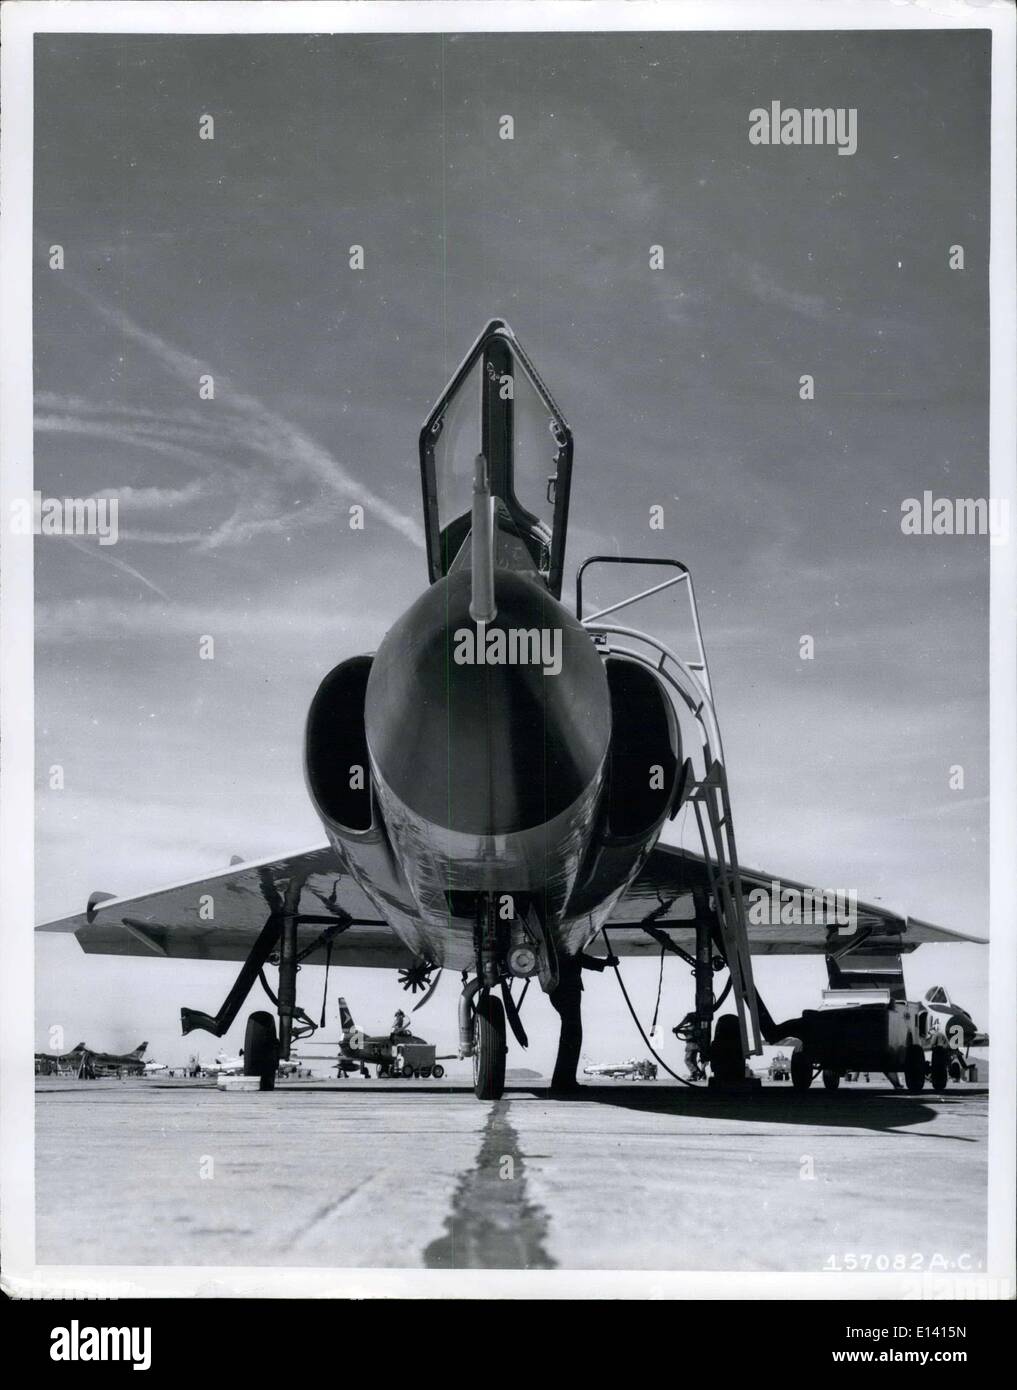 31 mars 2012 - à la dague prêt : chaque ligne de son Air Force F-102 Delta Dagger, un chasseur à réaction supersonique à ailes du 327thb Fighter-Interceptor Sqdn., George AFB, Californie., pointe vers le ciel. Une unité du commandement de la Défense aérienne, l'environnement bâti-support aide à la garde de la dague d'antenne sur Los Angeles et la région du sud de la Californie. Dans le ciel peut être vu la traînée d'autres avions à réaction. 1907 - 52 CM - anniversaire d'Or 1947. Banque D'Images